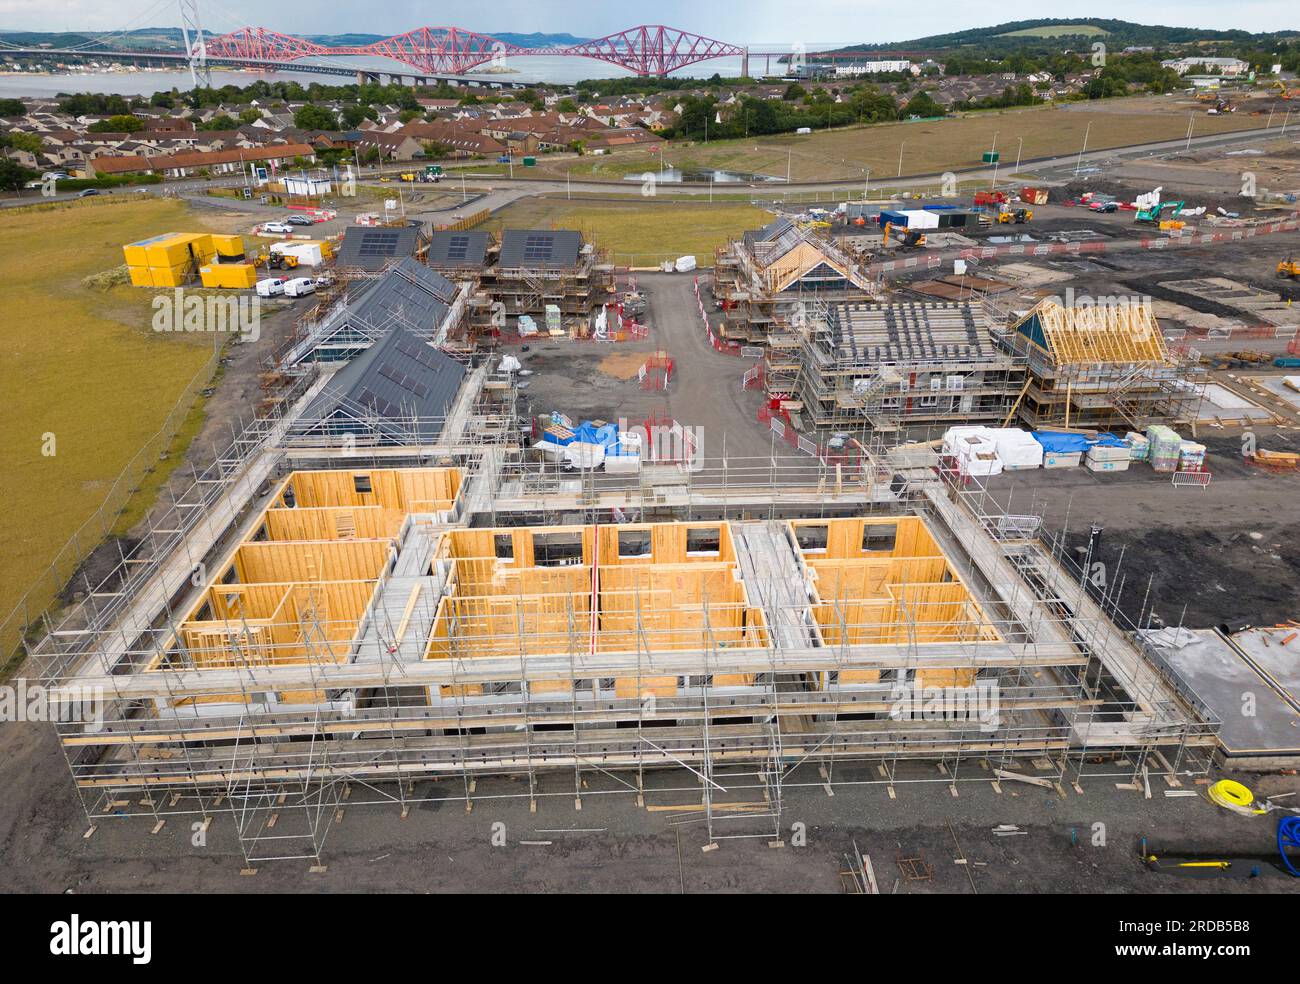 Vue aérienne de nouveaux logements en construction à Bridgewater Village à South Queensferry, West Lothian, Écosse, Royaume-Uni Banque D'Images